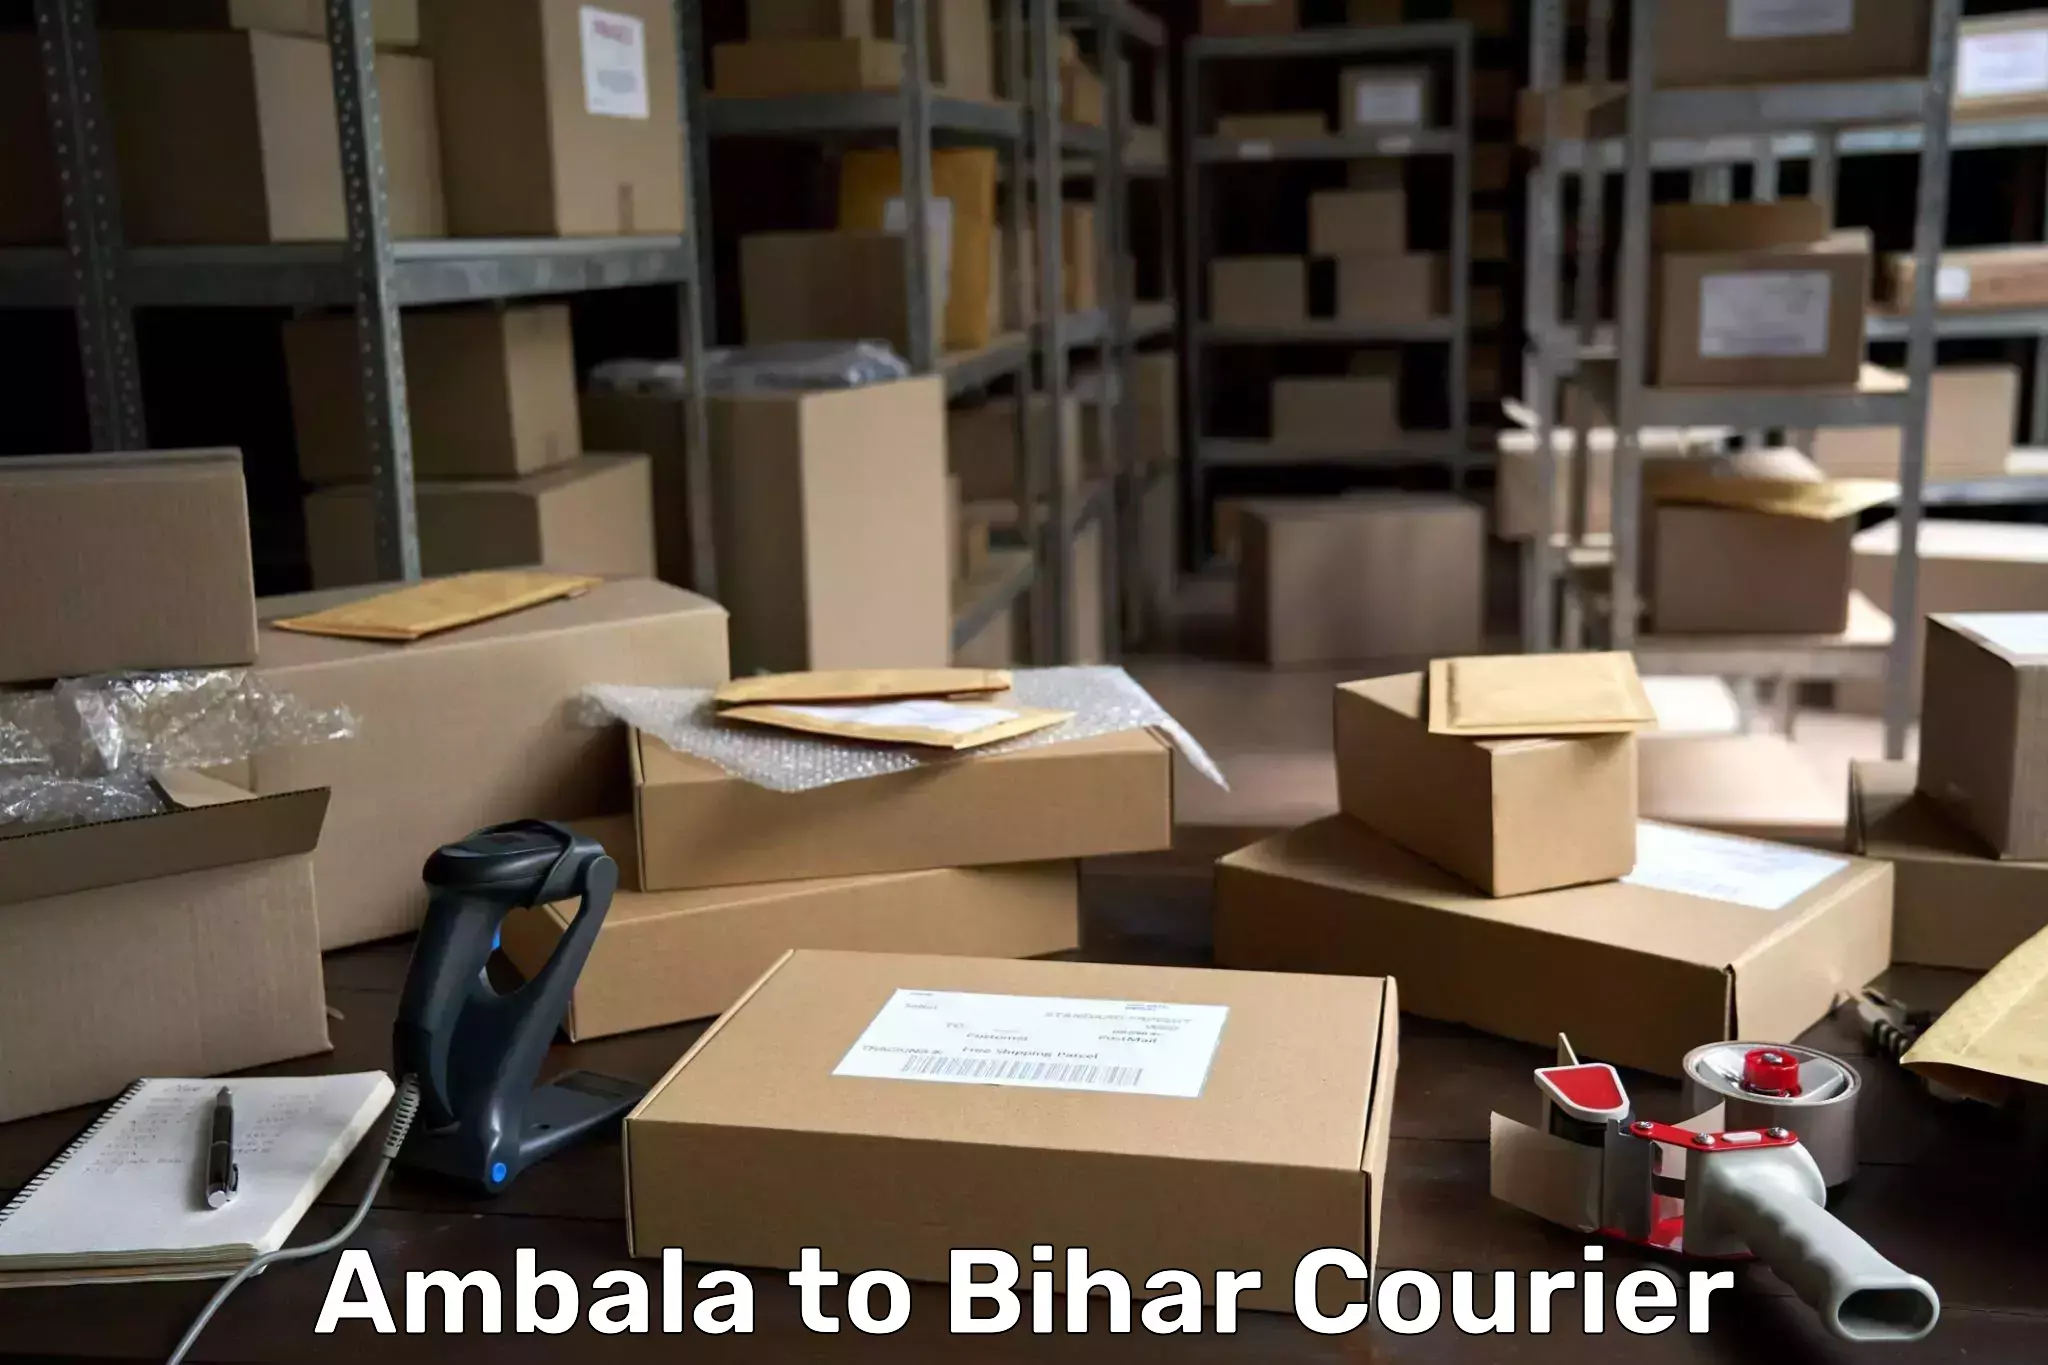 Advanced shipping technology Ambala to Kochas